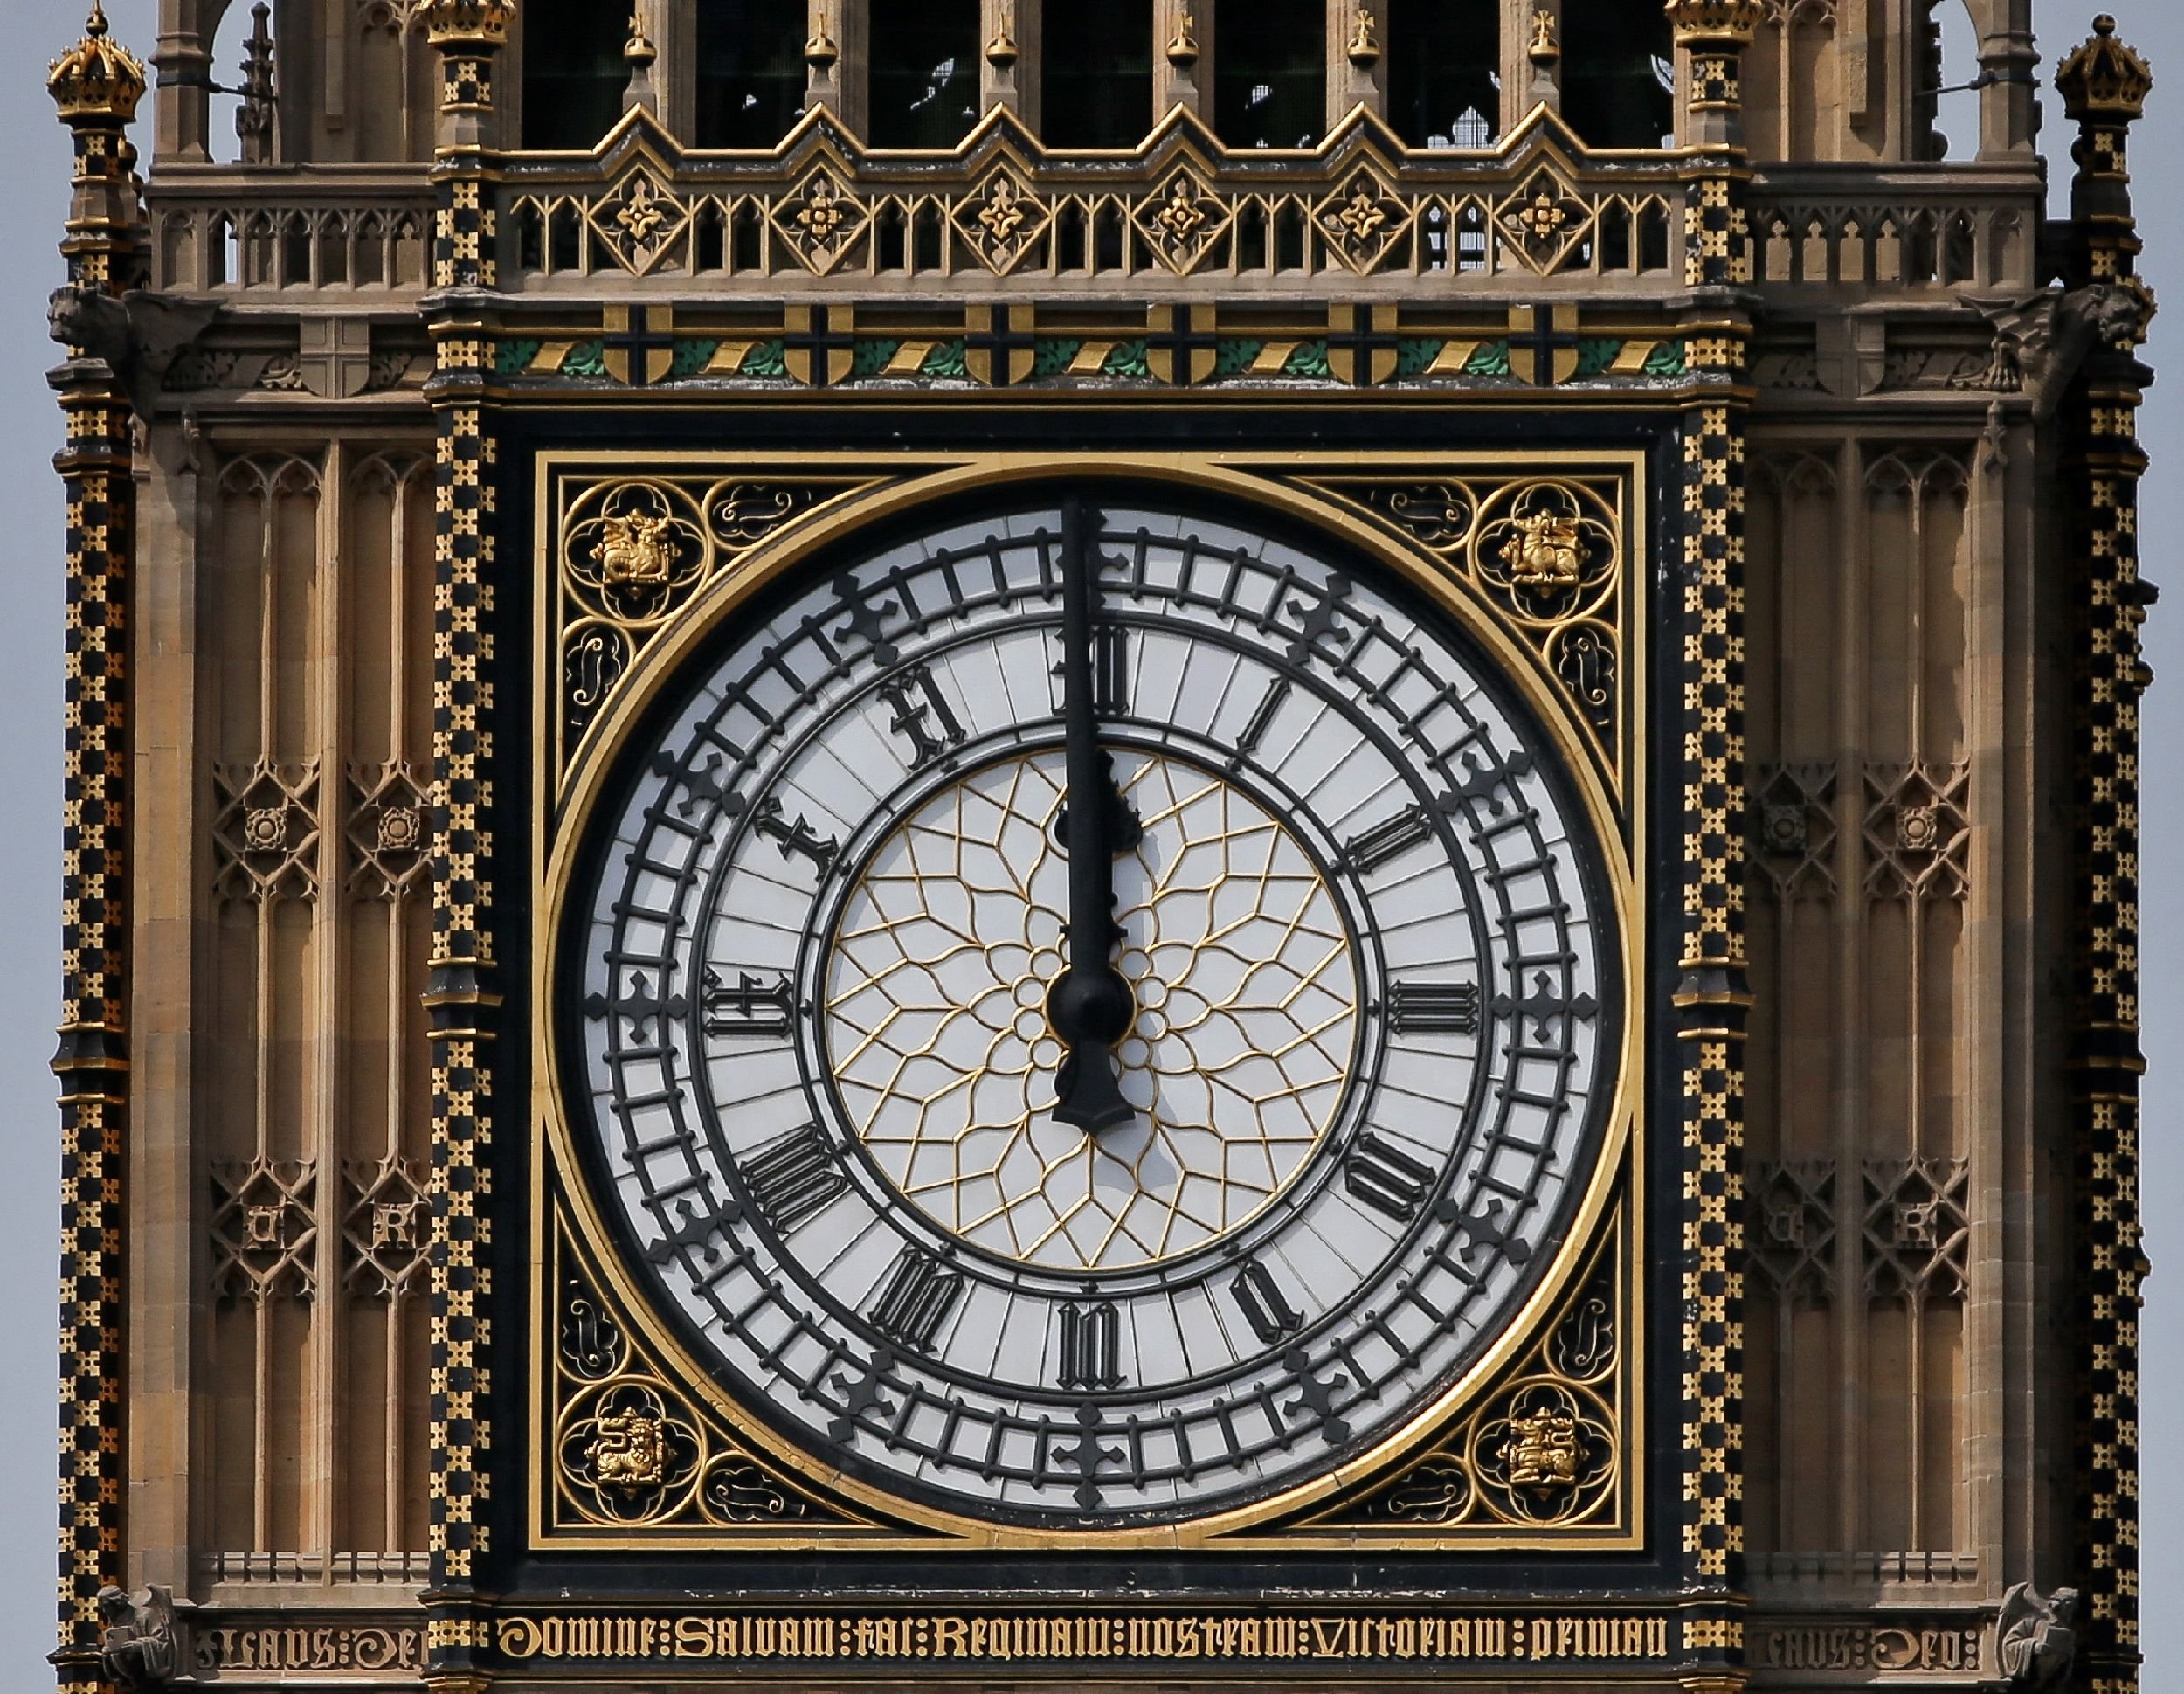 Salah satu dari empat wajah Jam Besar Menara Elizabeth, yang biasa disebut sebagai Big Ben, di Gedung Parlemen, di pusat kota London, Inggris, 14 Agustus 2017. (AFP Photo)